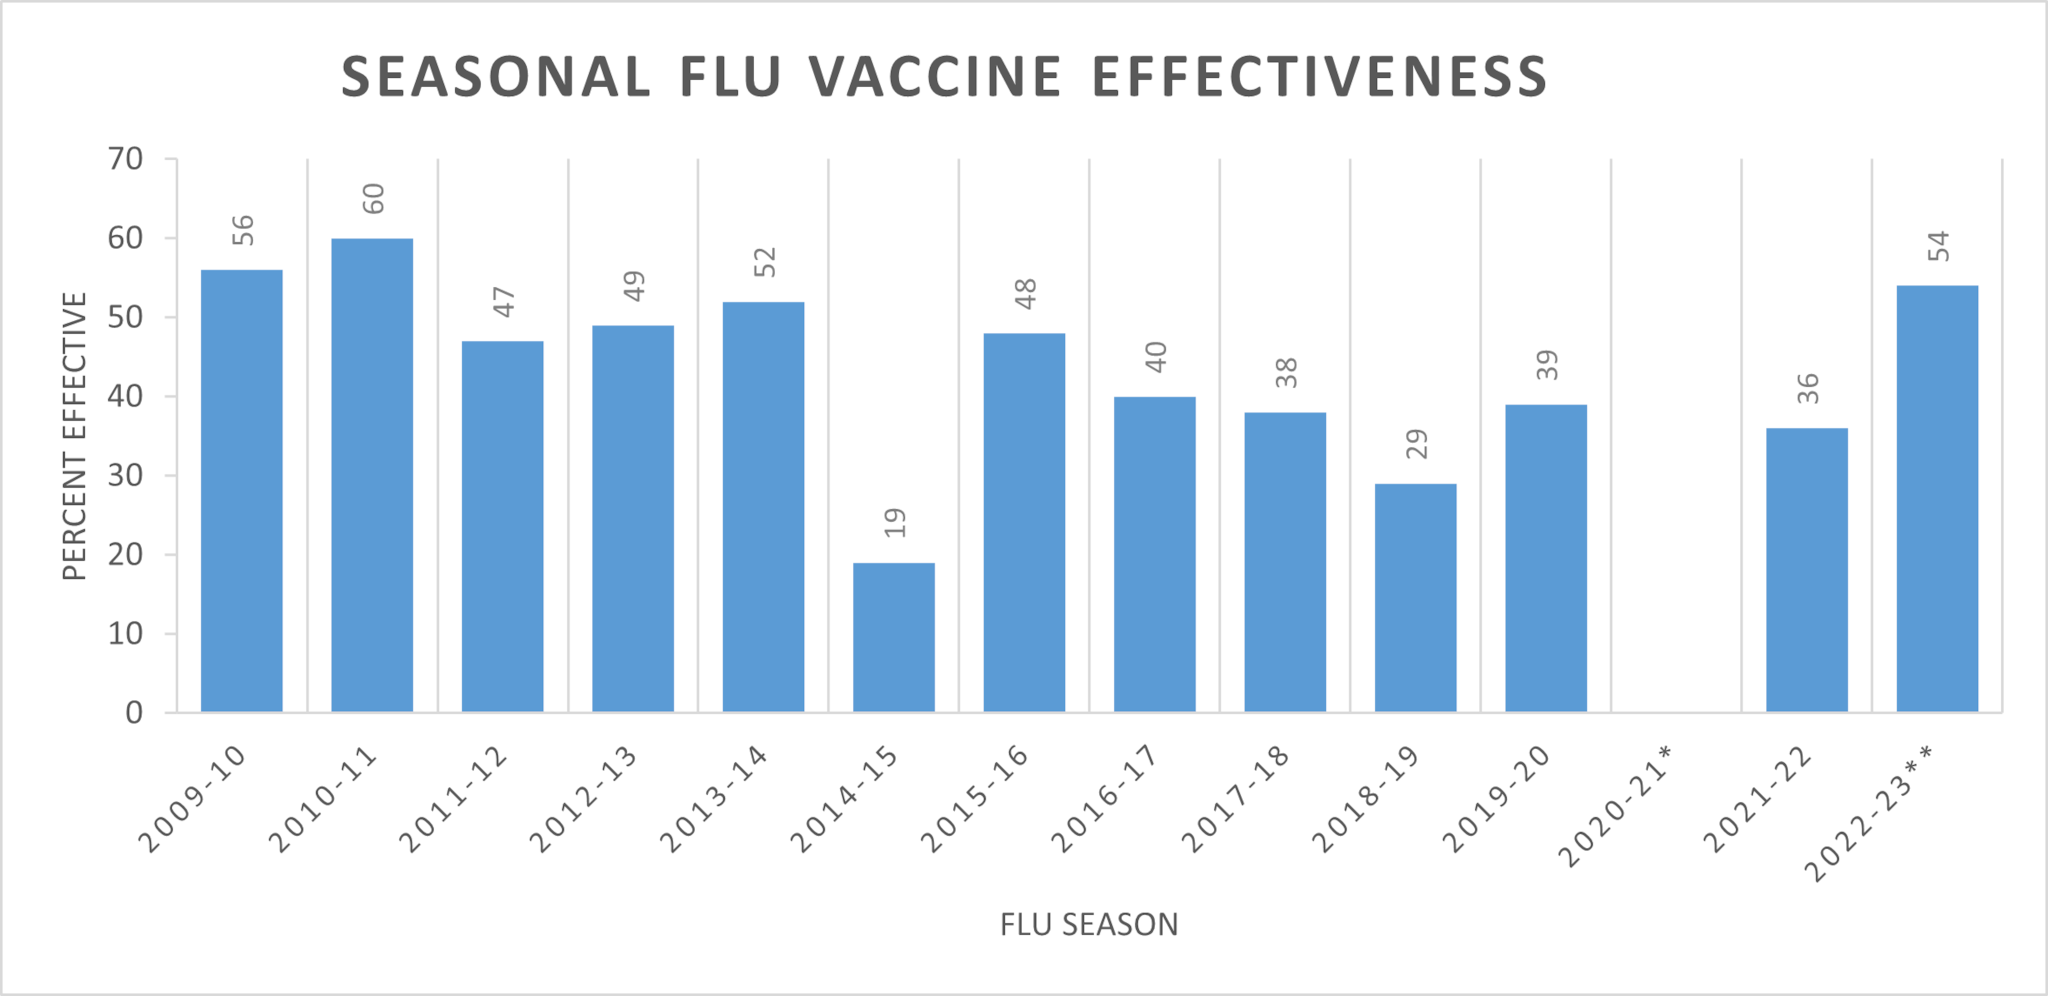 Cuadro de barras sobre la eficacia de la vacuna contra la influenza estacional, 2009-10 56 %, 2010-11 60 %, 2011-12 47 %, 2012-13 49 %, 2013-14 52 %, 2014-15 19 %, 2015-16 4 %, 2016-17 40 %, 2017-18 38 %, 2018-1 29 %, 2019-20 399 %, 2020-21 sin datos, 2021-22 35 %